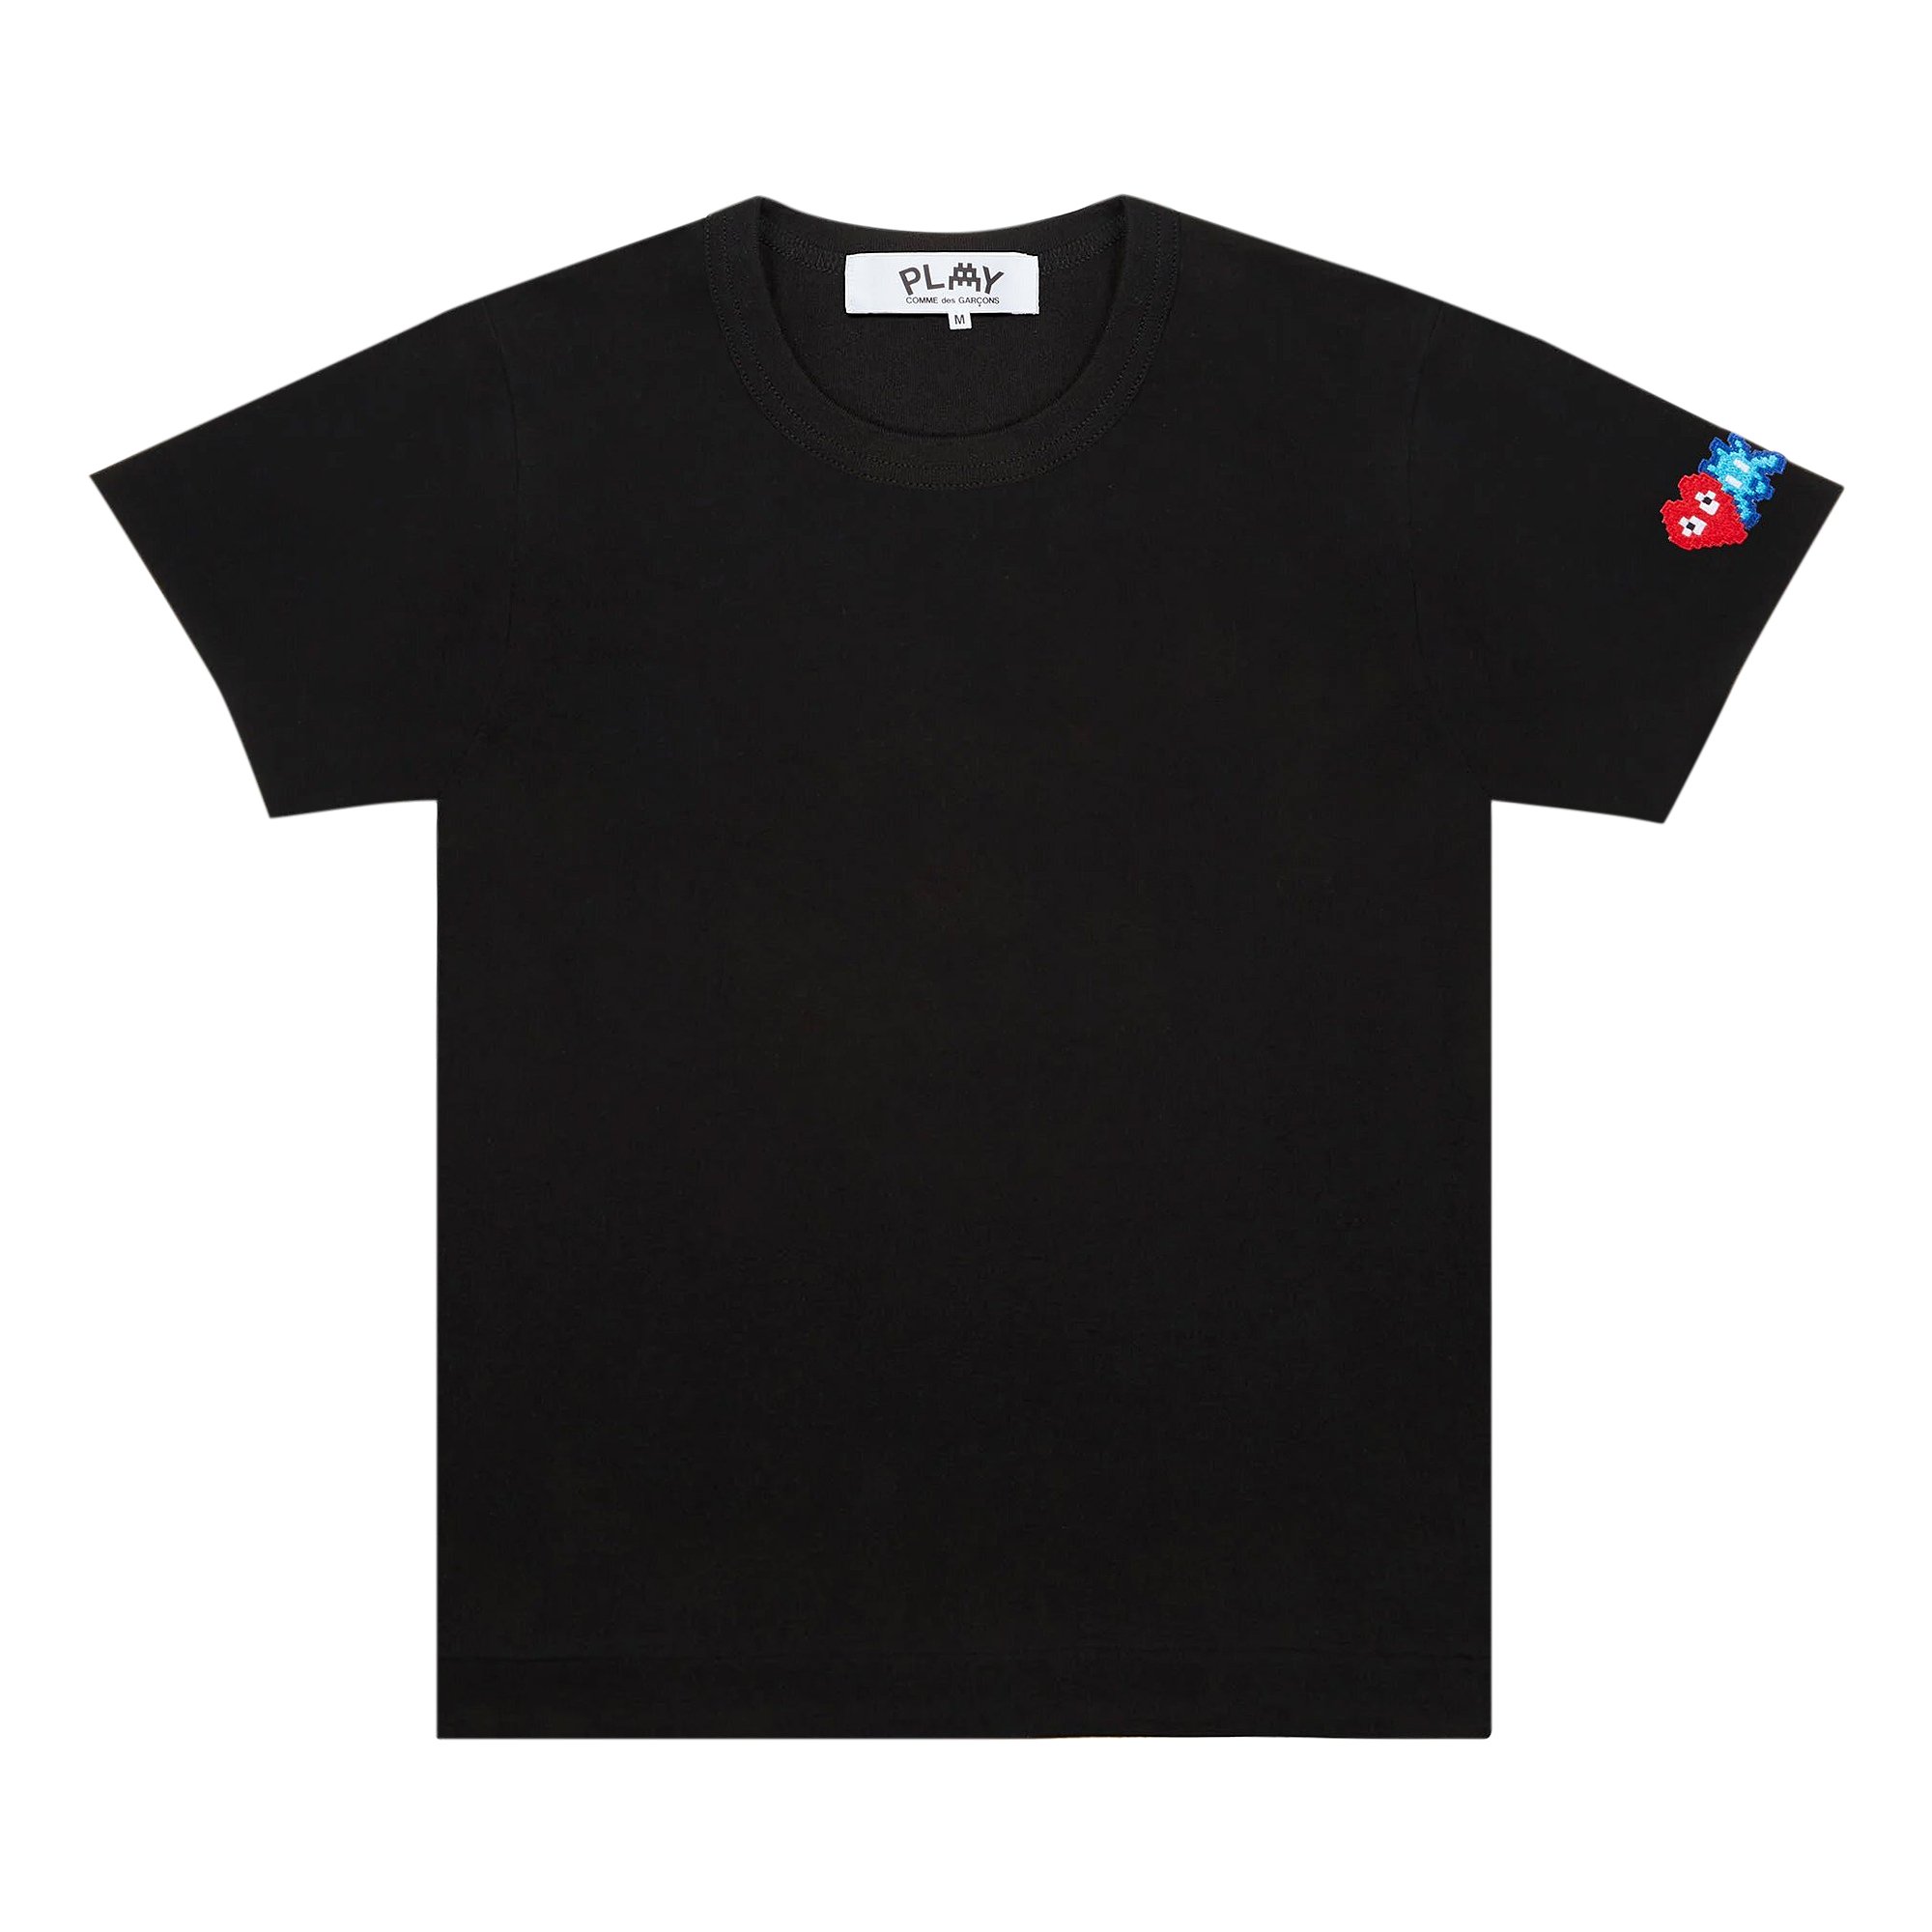 футболка comme des garçons play с двойным сердечком черная Футболка Comme des Garçons PLAY с двойным сердечком, черная